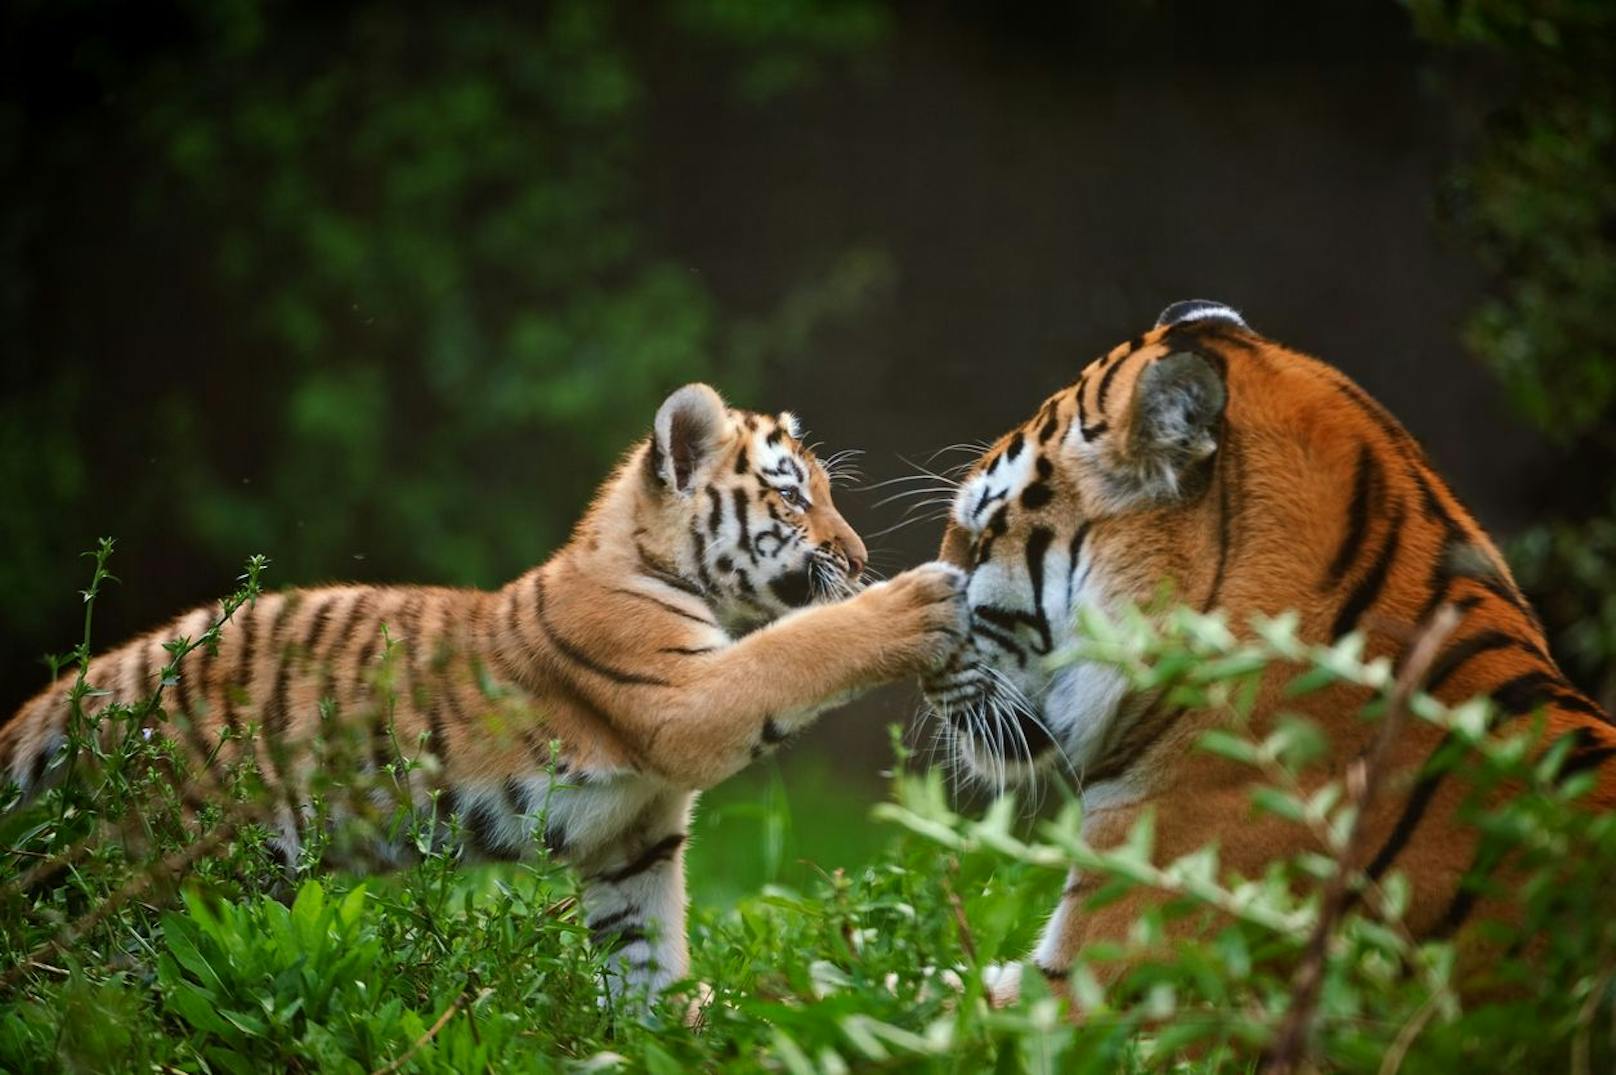 <strong>GEWINNER 2022:</strong> Im chinesischen Kalender war 2022 das Jahr des Tigers. Aktuellen Zählungen zufolge gab es seit dem letzten Tigerjahr 2010 einen Zuwachs von 50 Prozent auf nunmehr 4.500 bis 5.000 Tiger.